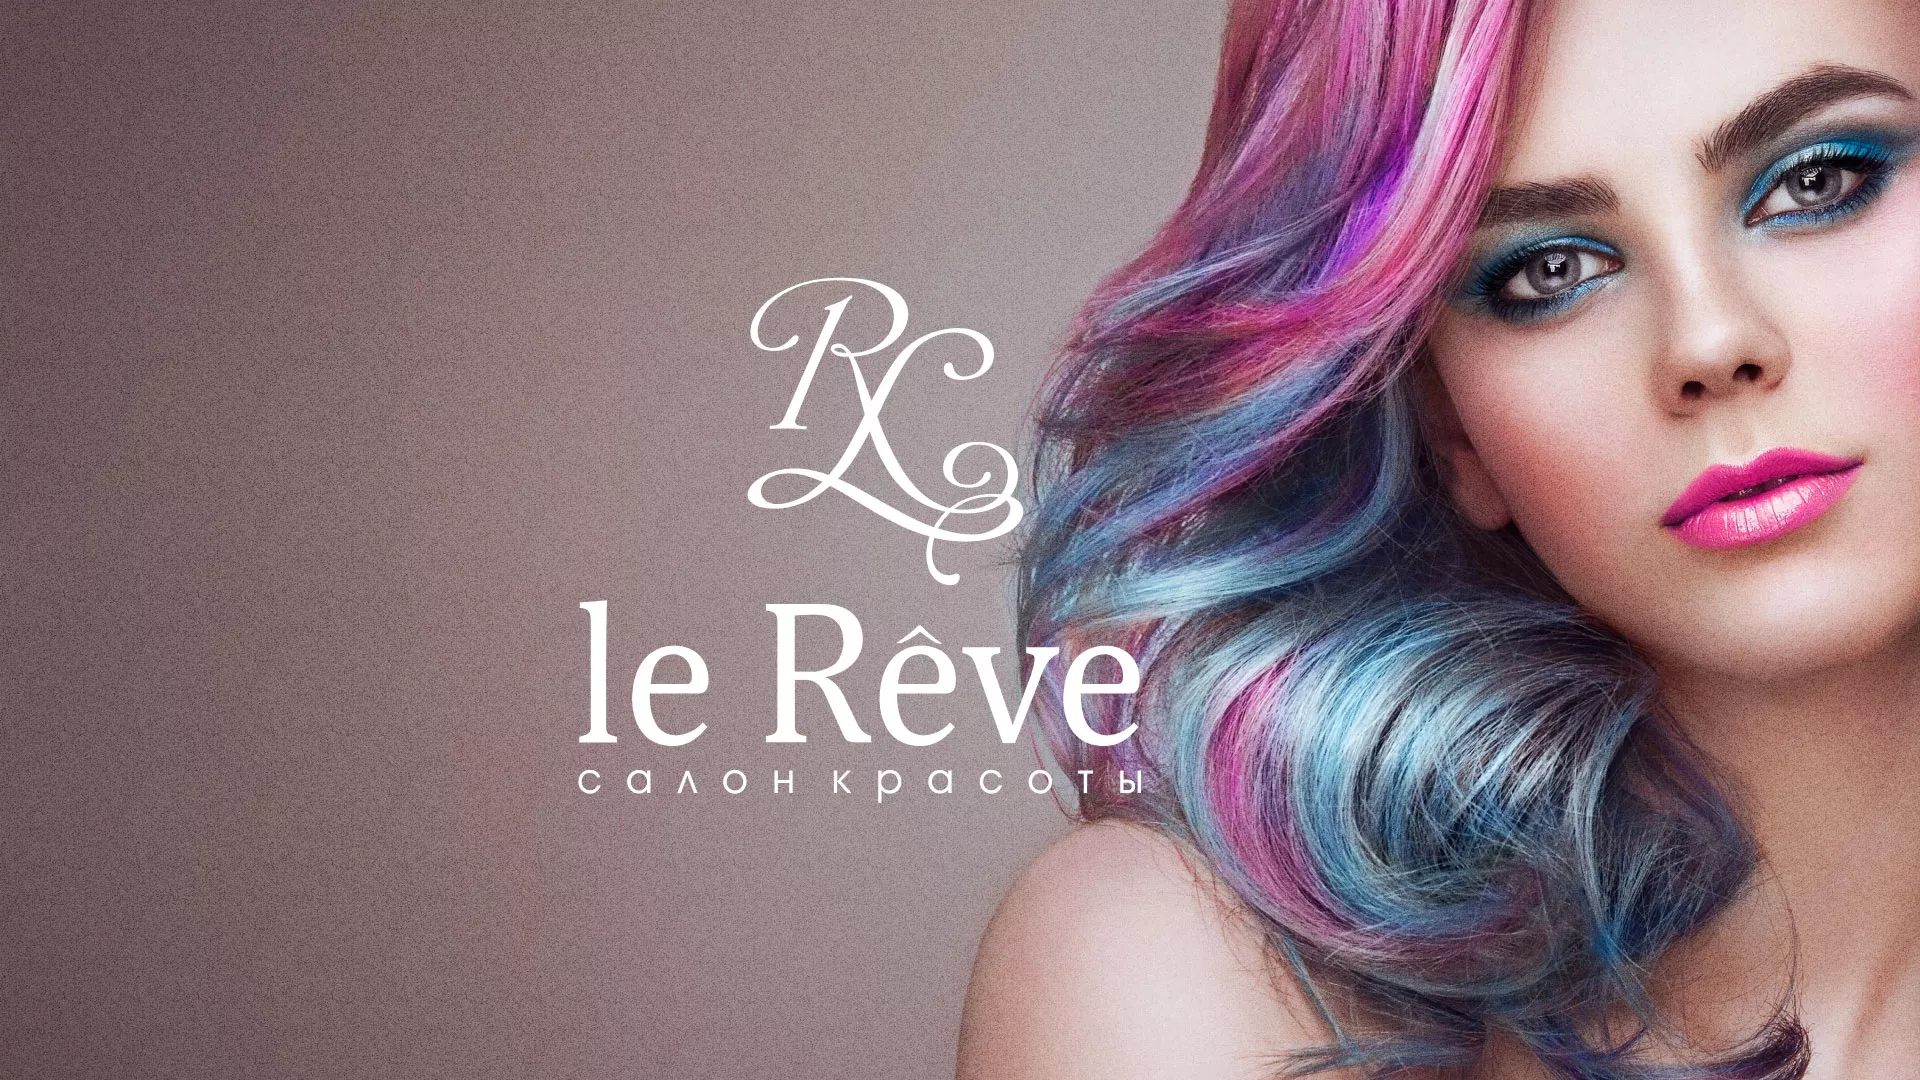 Создание сайта для салона красоты «Le Reve» в Гороховце